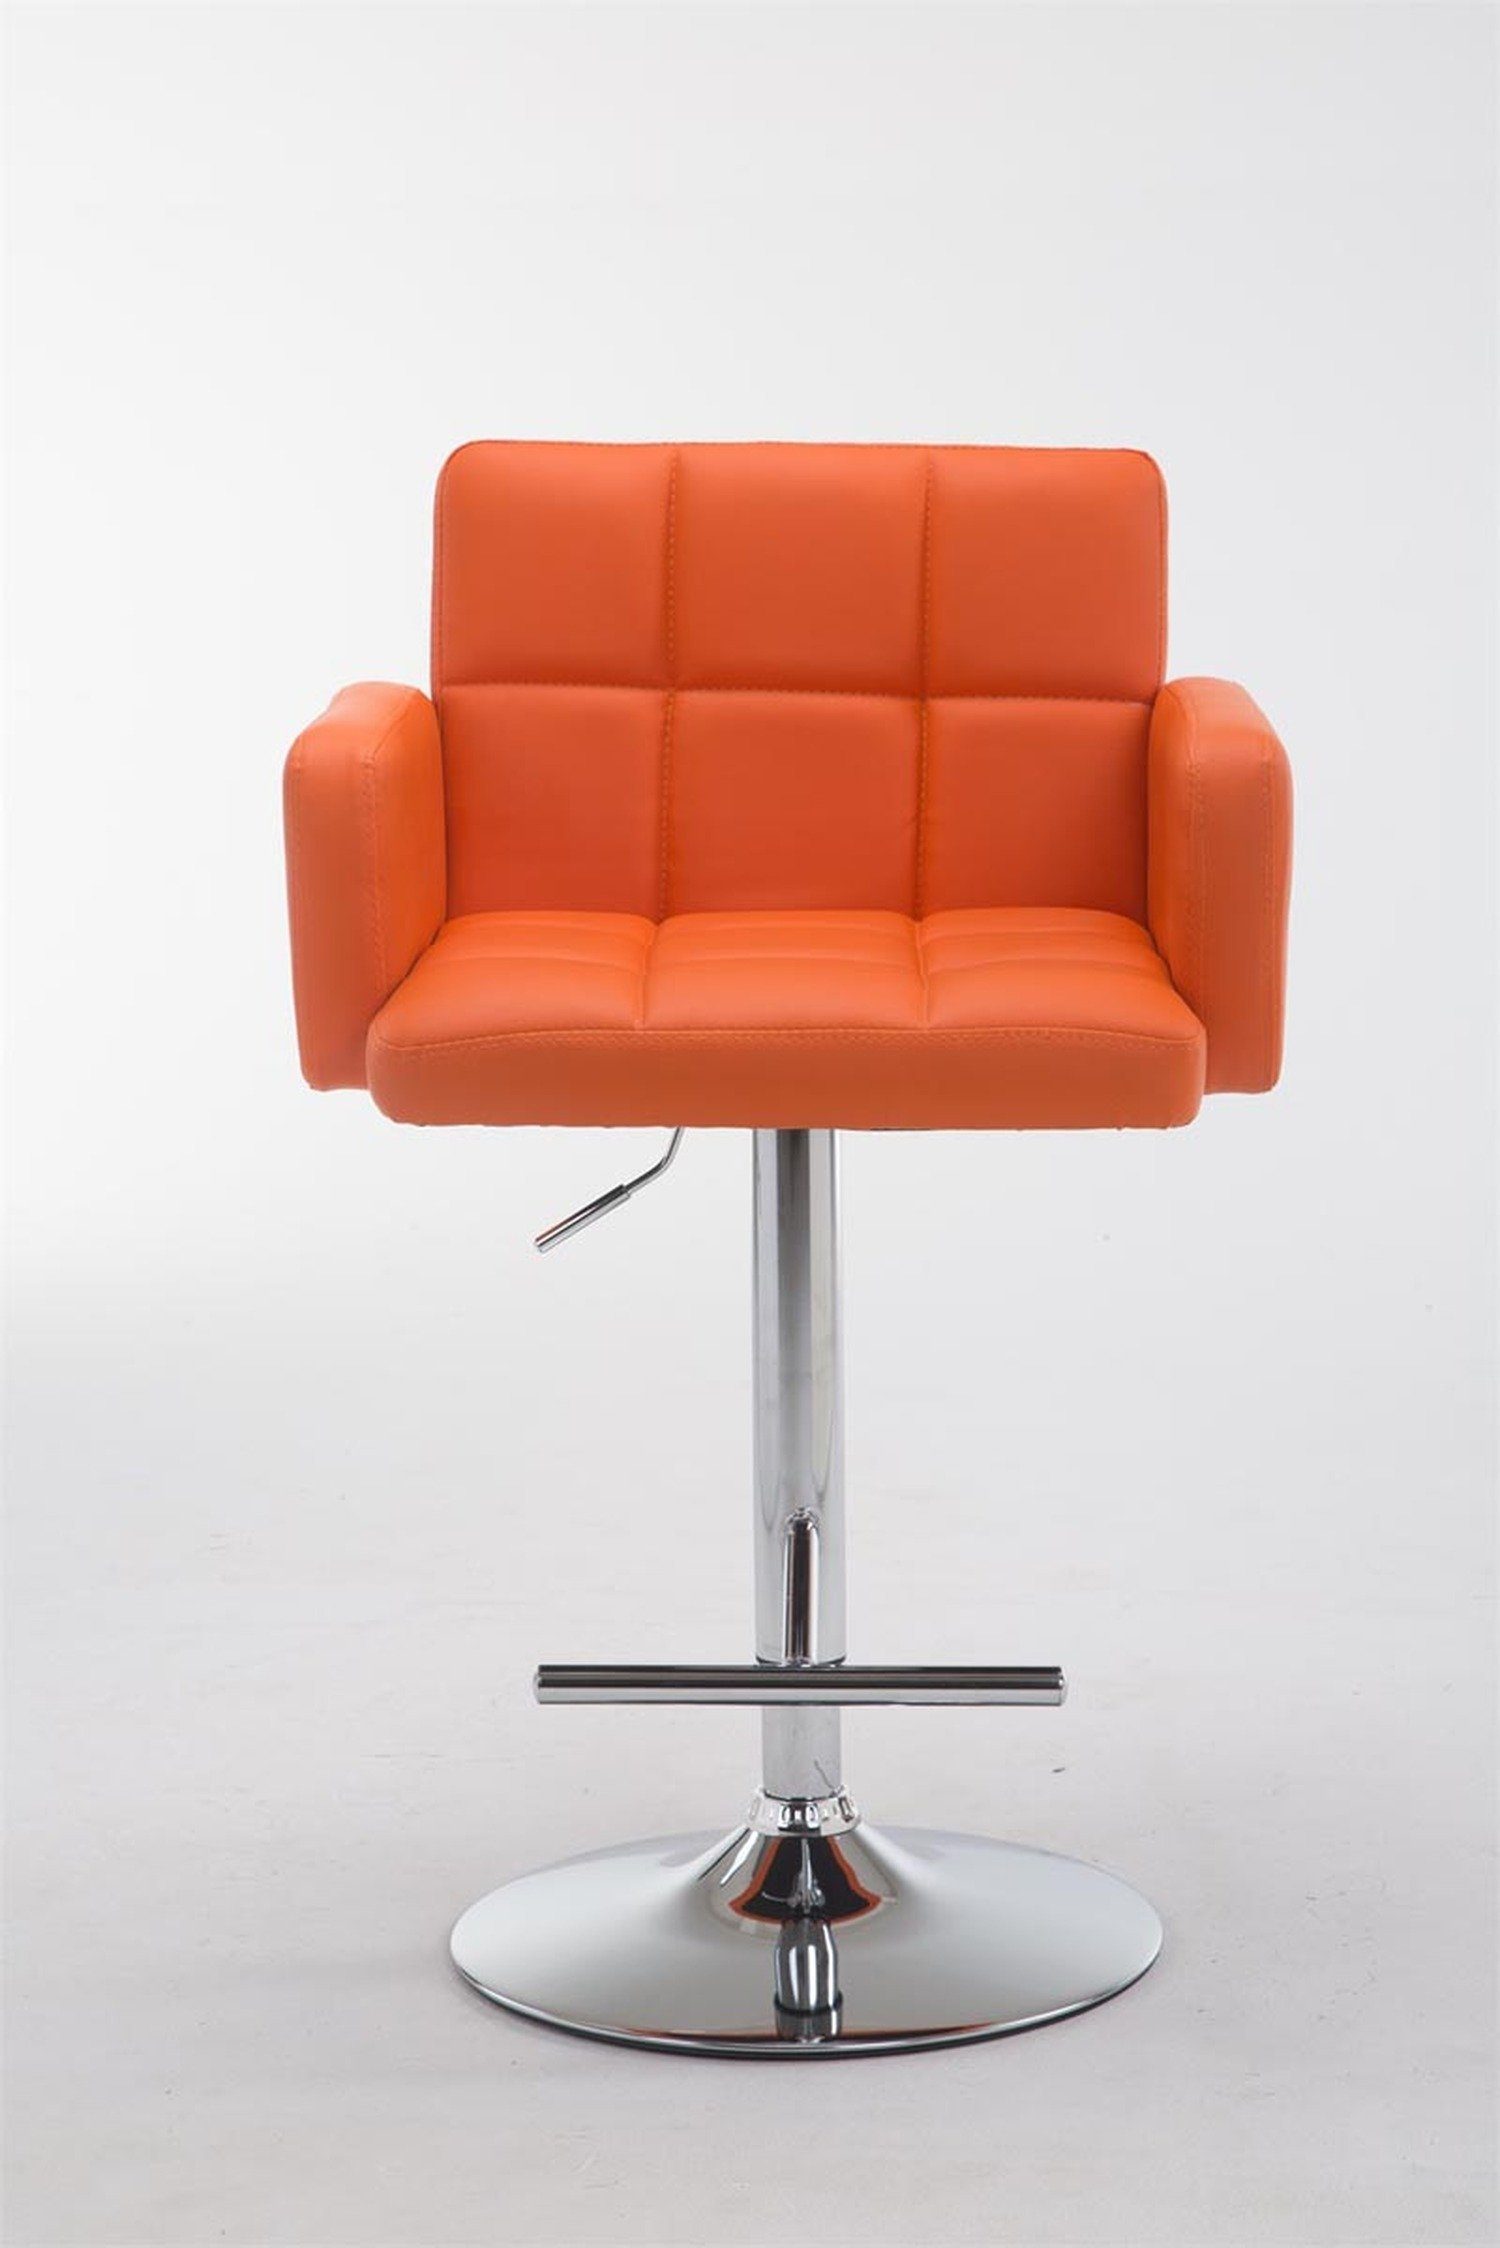 - - Sitzfläche: 360° für (mit Rückenlehne höhenverstellbar Gestell: Theke chrom - Hocker Orange Küche), Angeles TPFLiving & Los Metall hoher drehbar Kunstleder - Barhocker